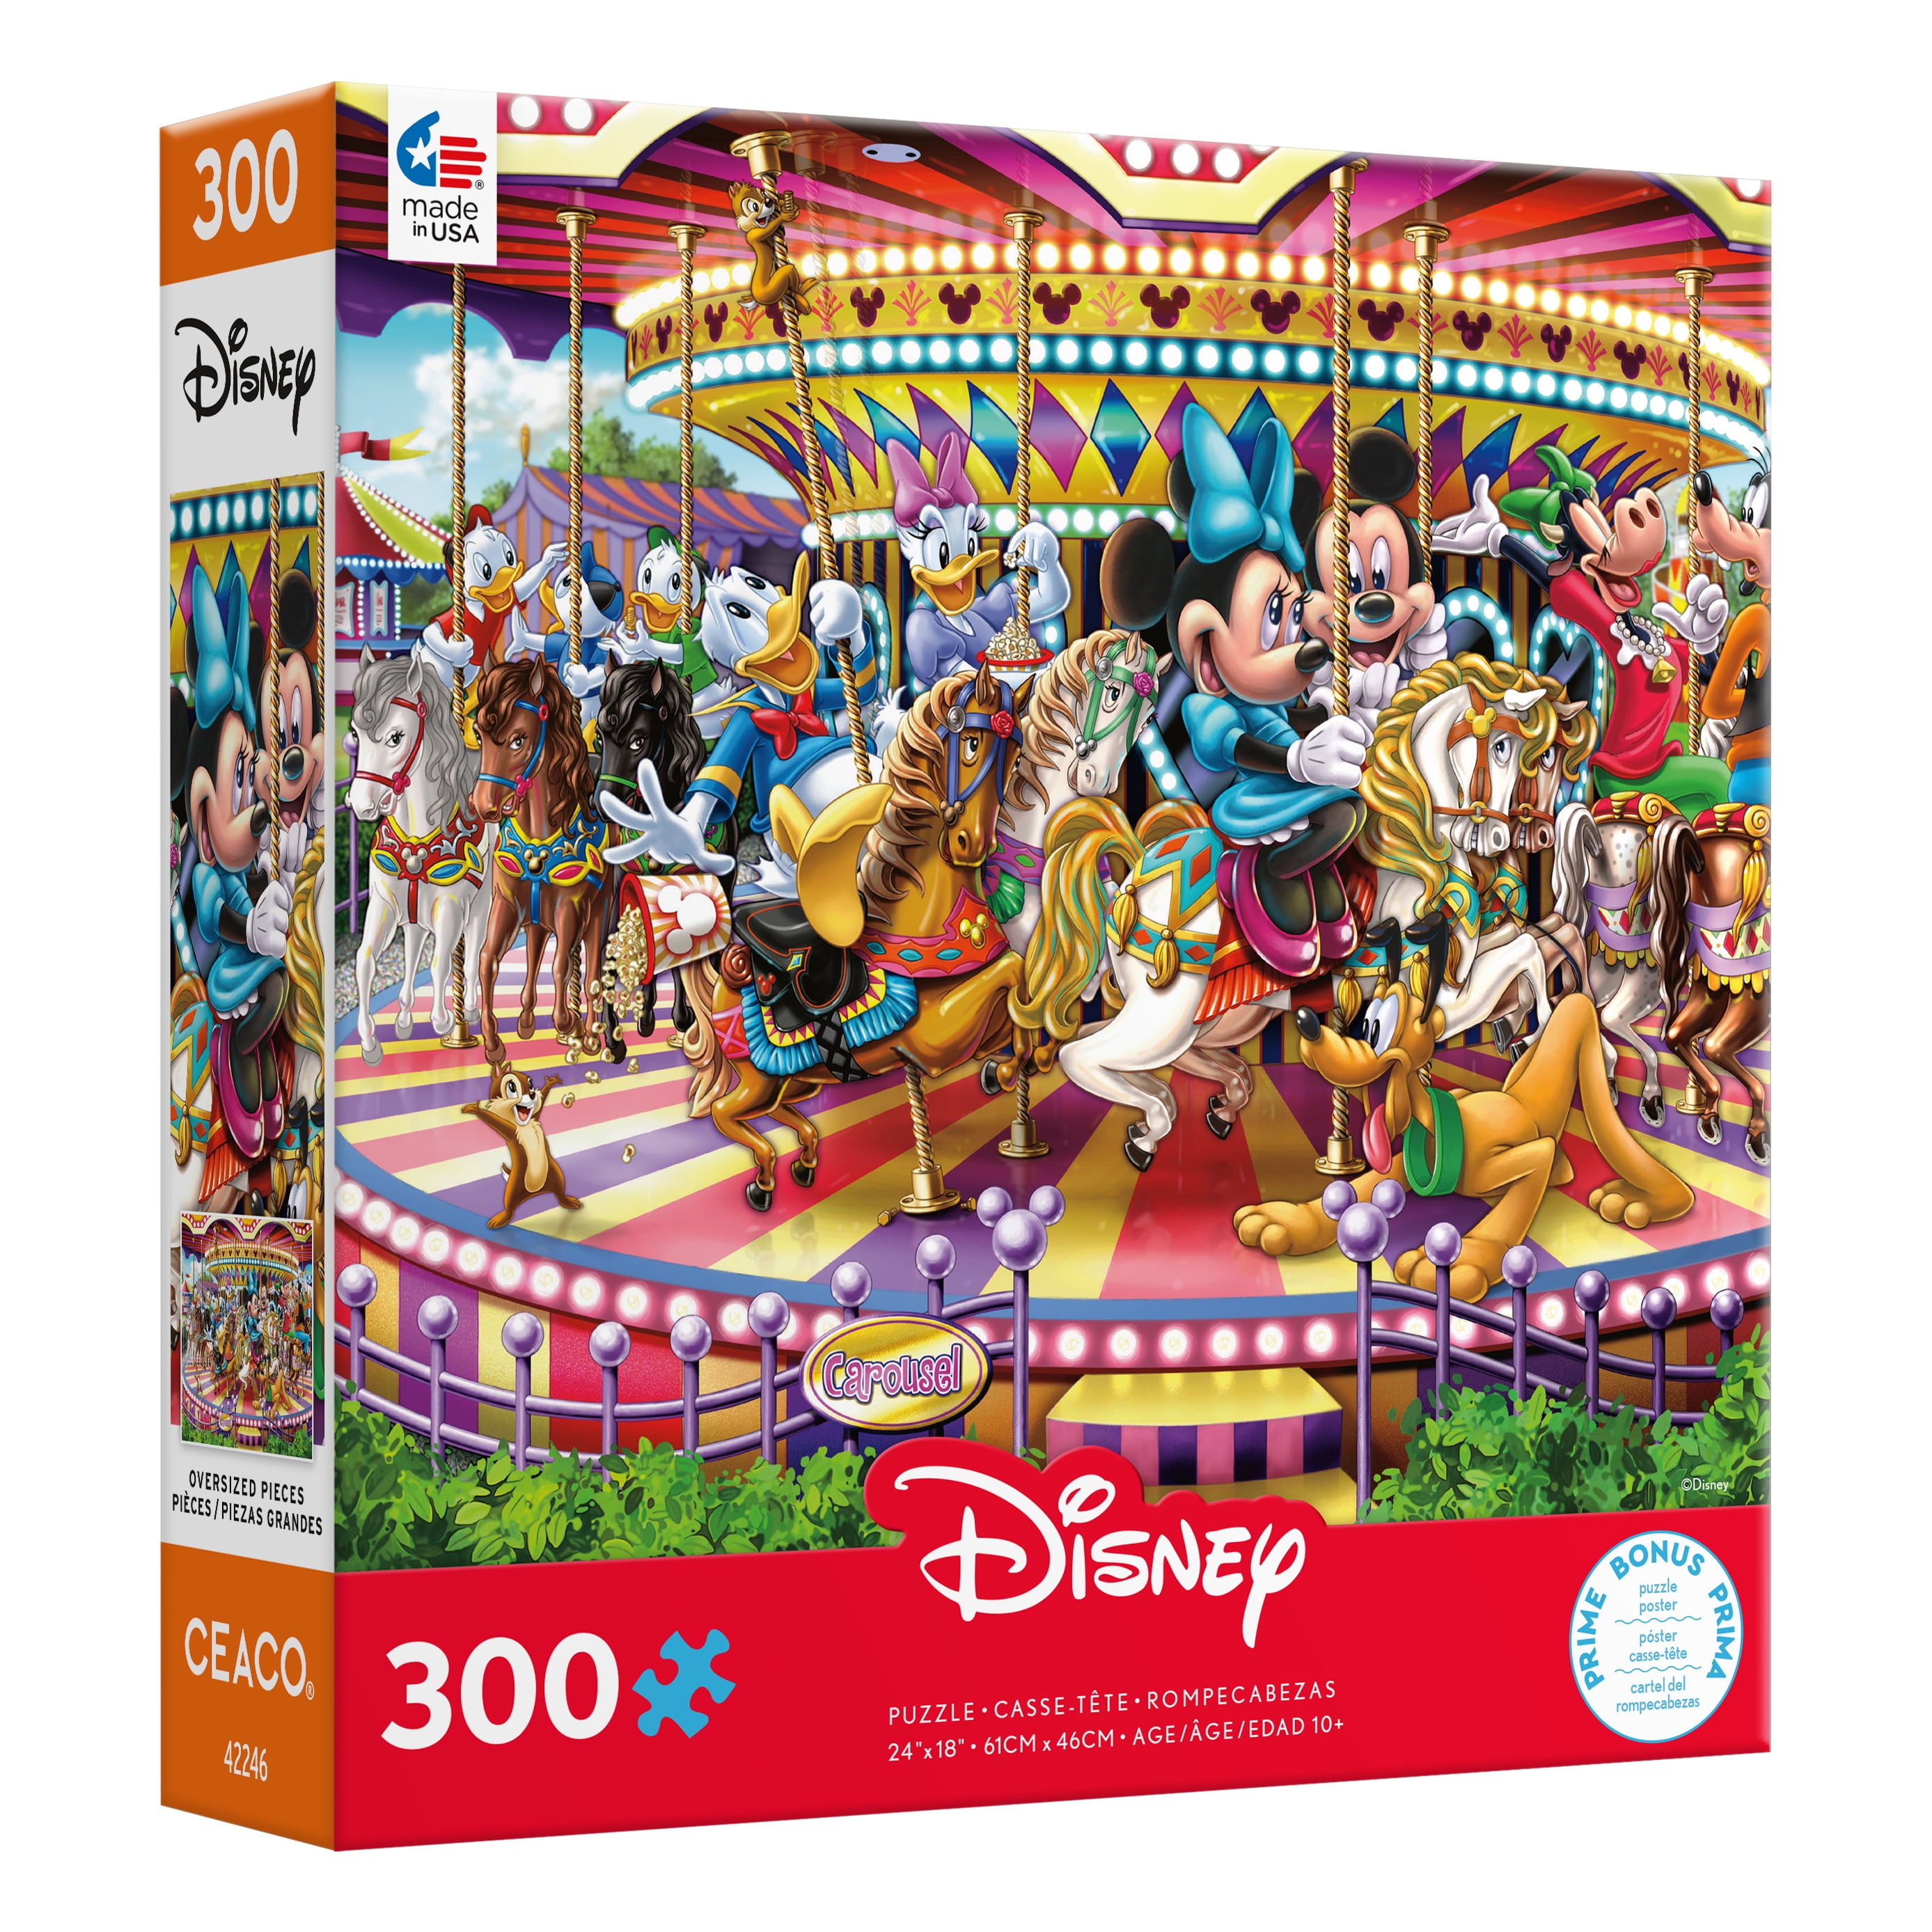 Puzzle forme 300 pièces en bois : Mickey et Minnie - Ravensburger